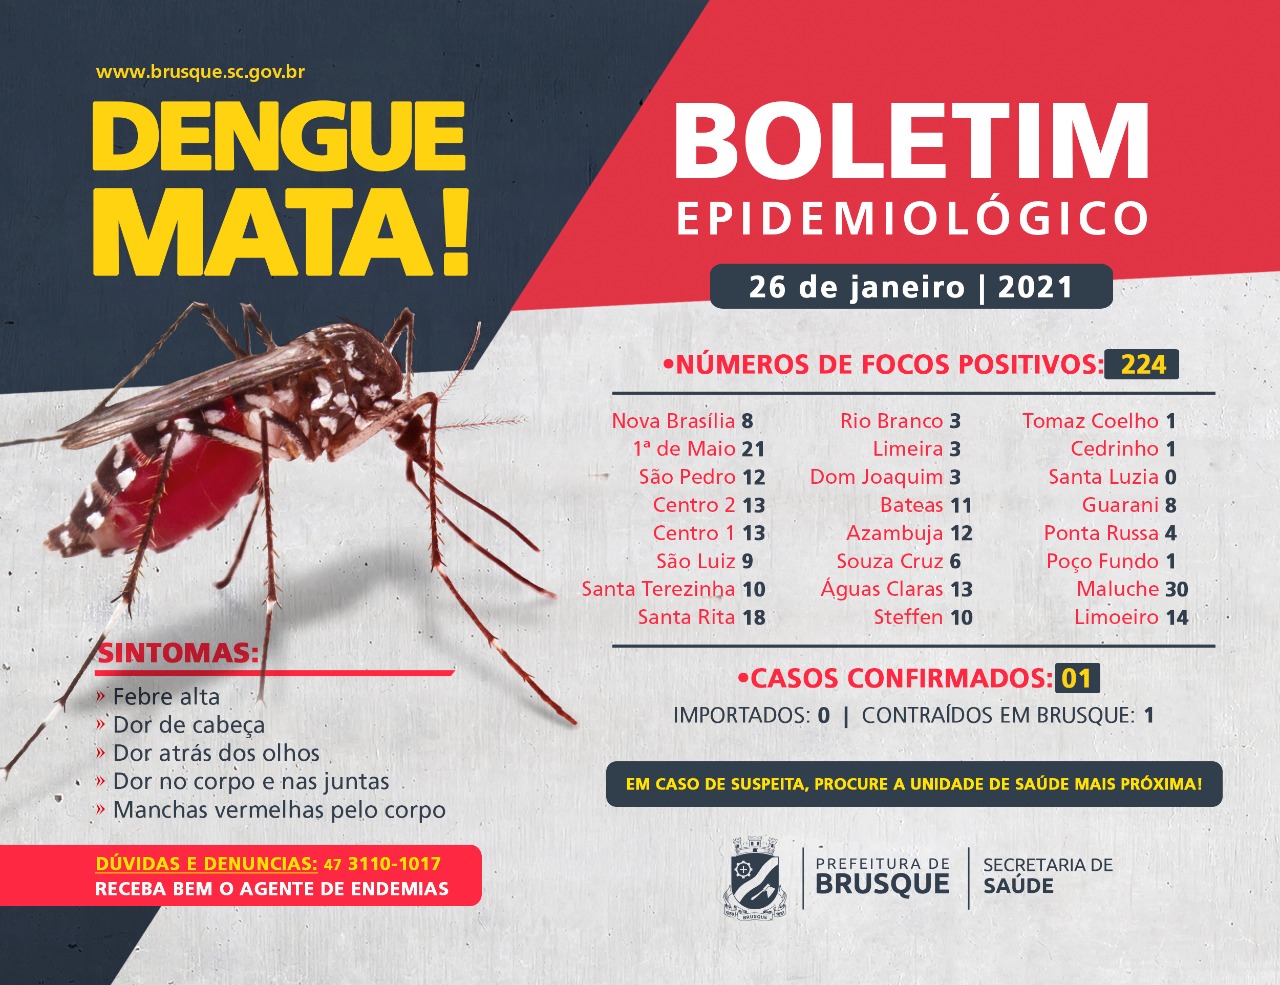 Confira o boletim epidemiológico da dengue desta terça-feira (26)